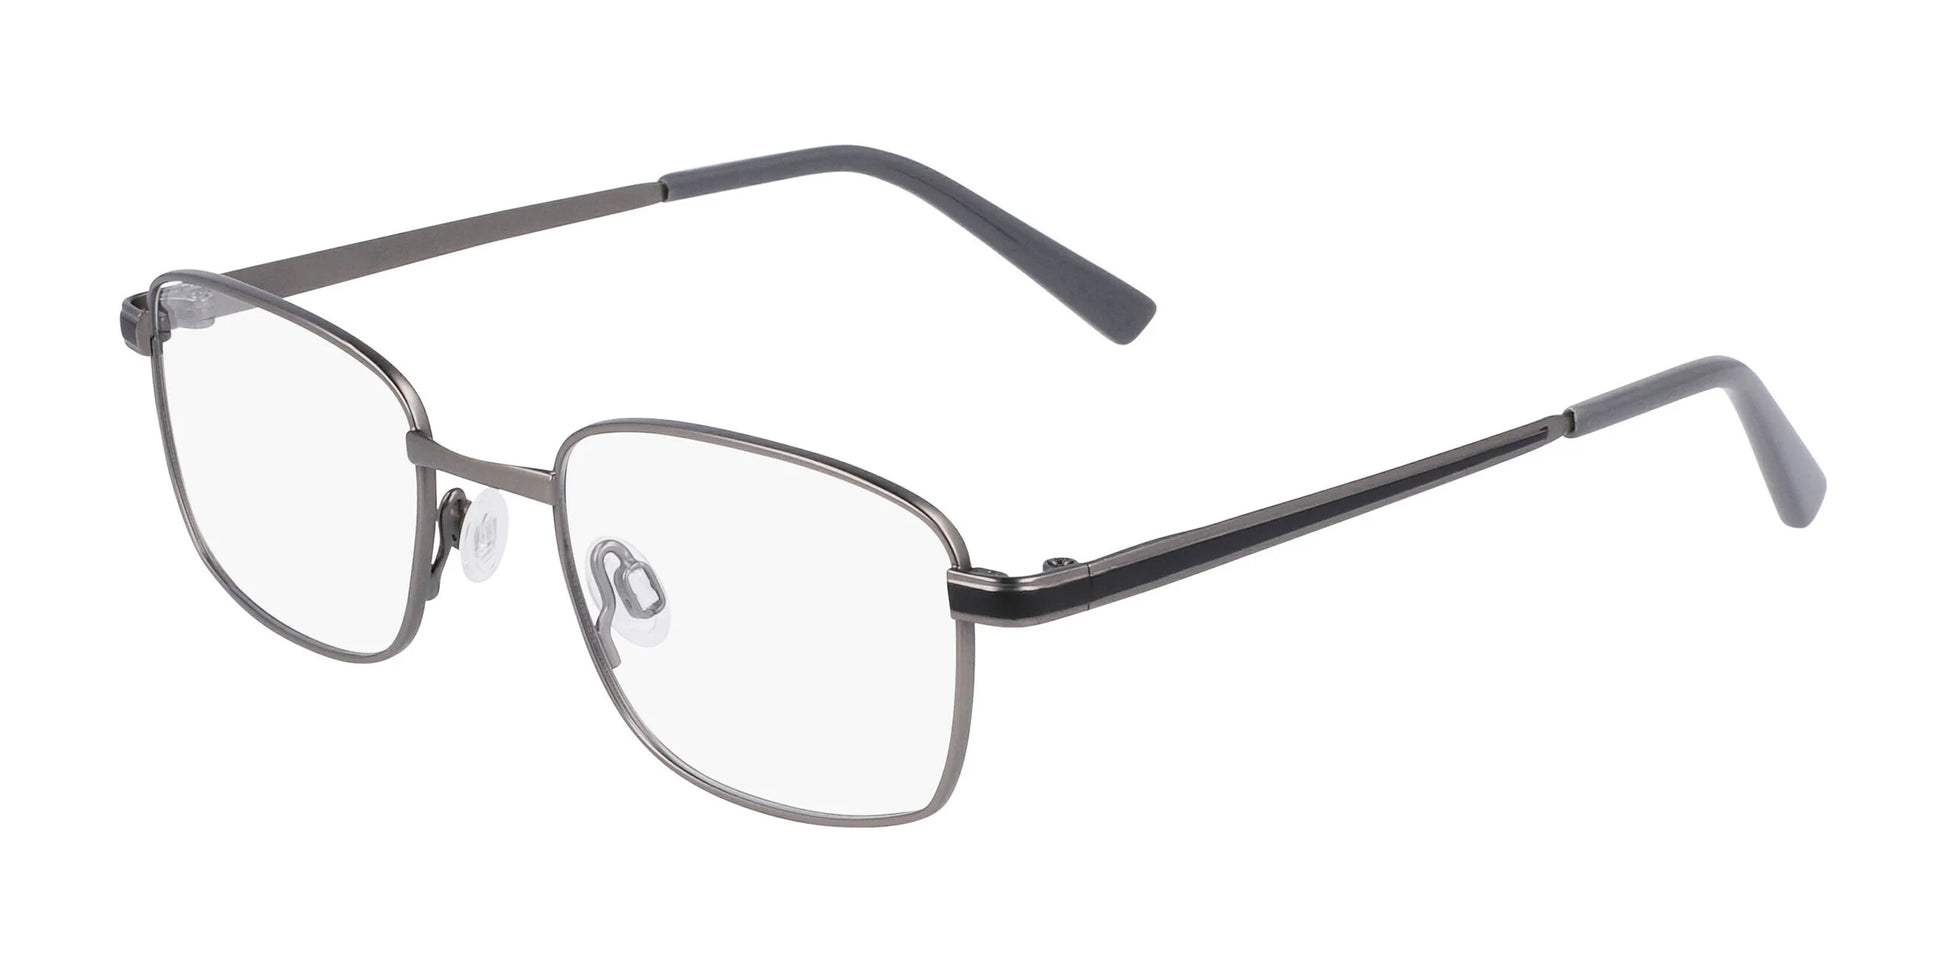 Flexon J4014 Eyeglasses Matte Gunmetal